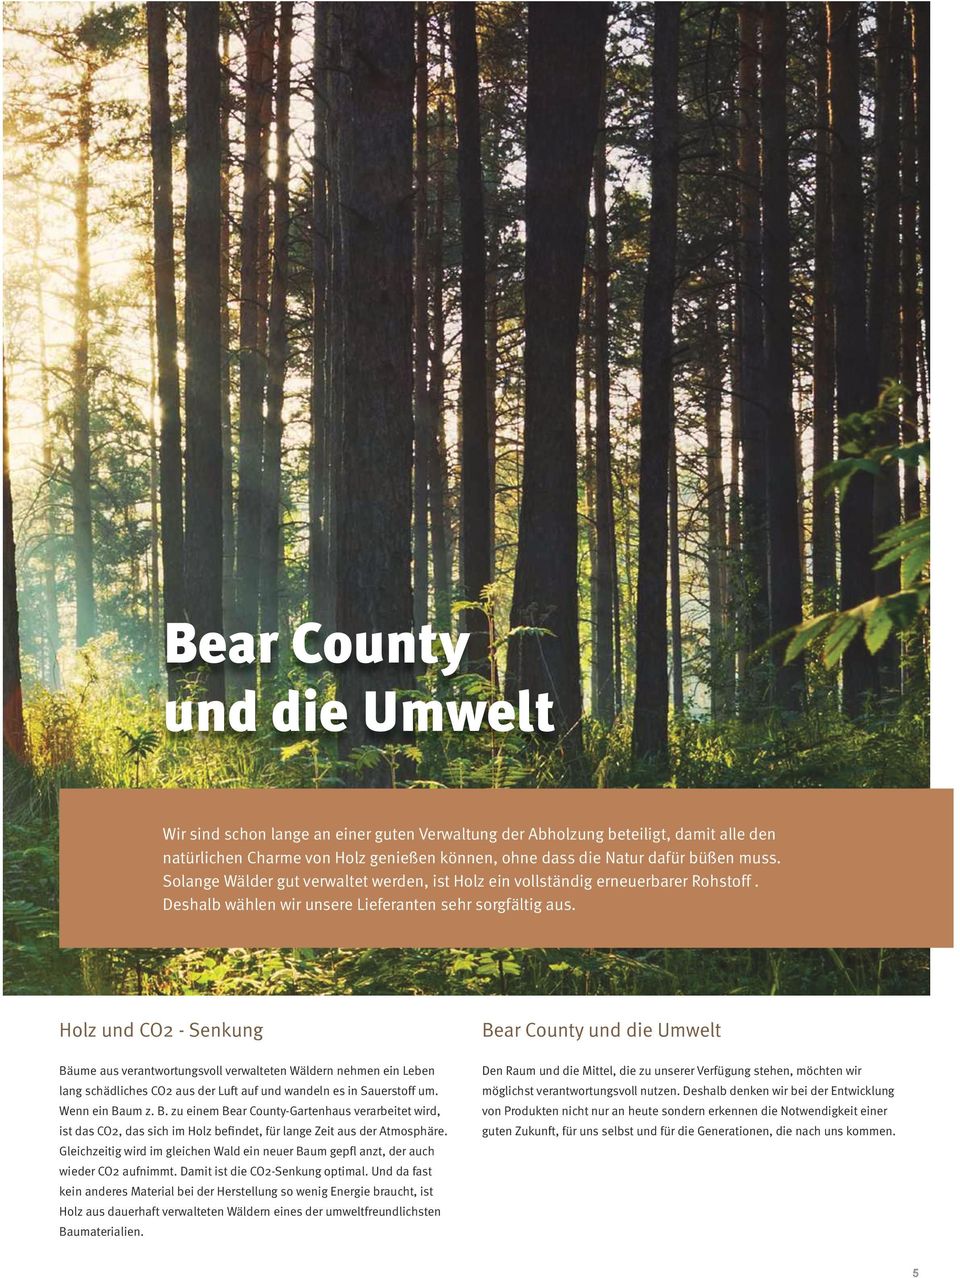 Holz und CO2 - Senkung Bäume aus verantwortungsvoll verwalteten Wäldern nehmen ein Leben lang schädliches CO2 aus der Luft auf und wandeln es in Sauerstoff um. Wenn ein Baum z. B. zu einem Bear County-Gartenhaus verarbeitet wird, ist das CO2, das sich im Holz befindet, für lange Zeit aus der Atmosphäre.